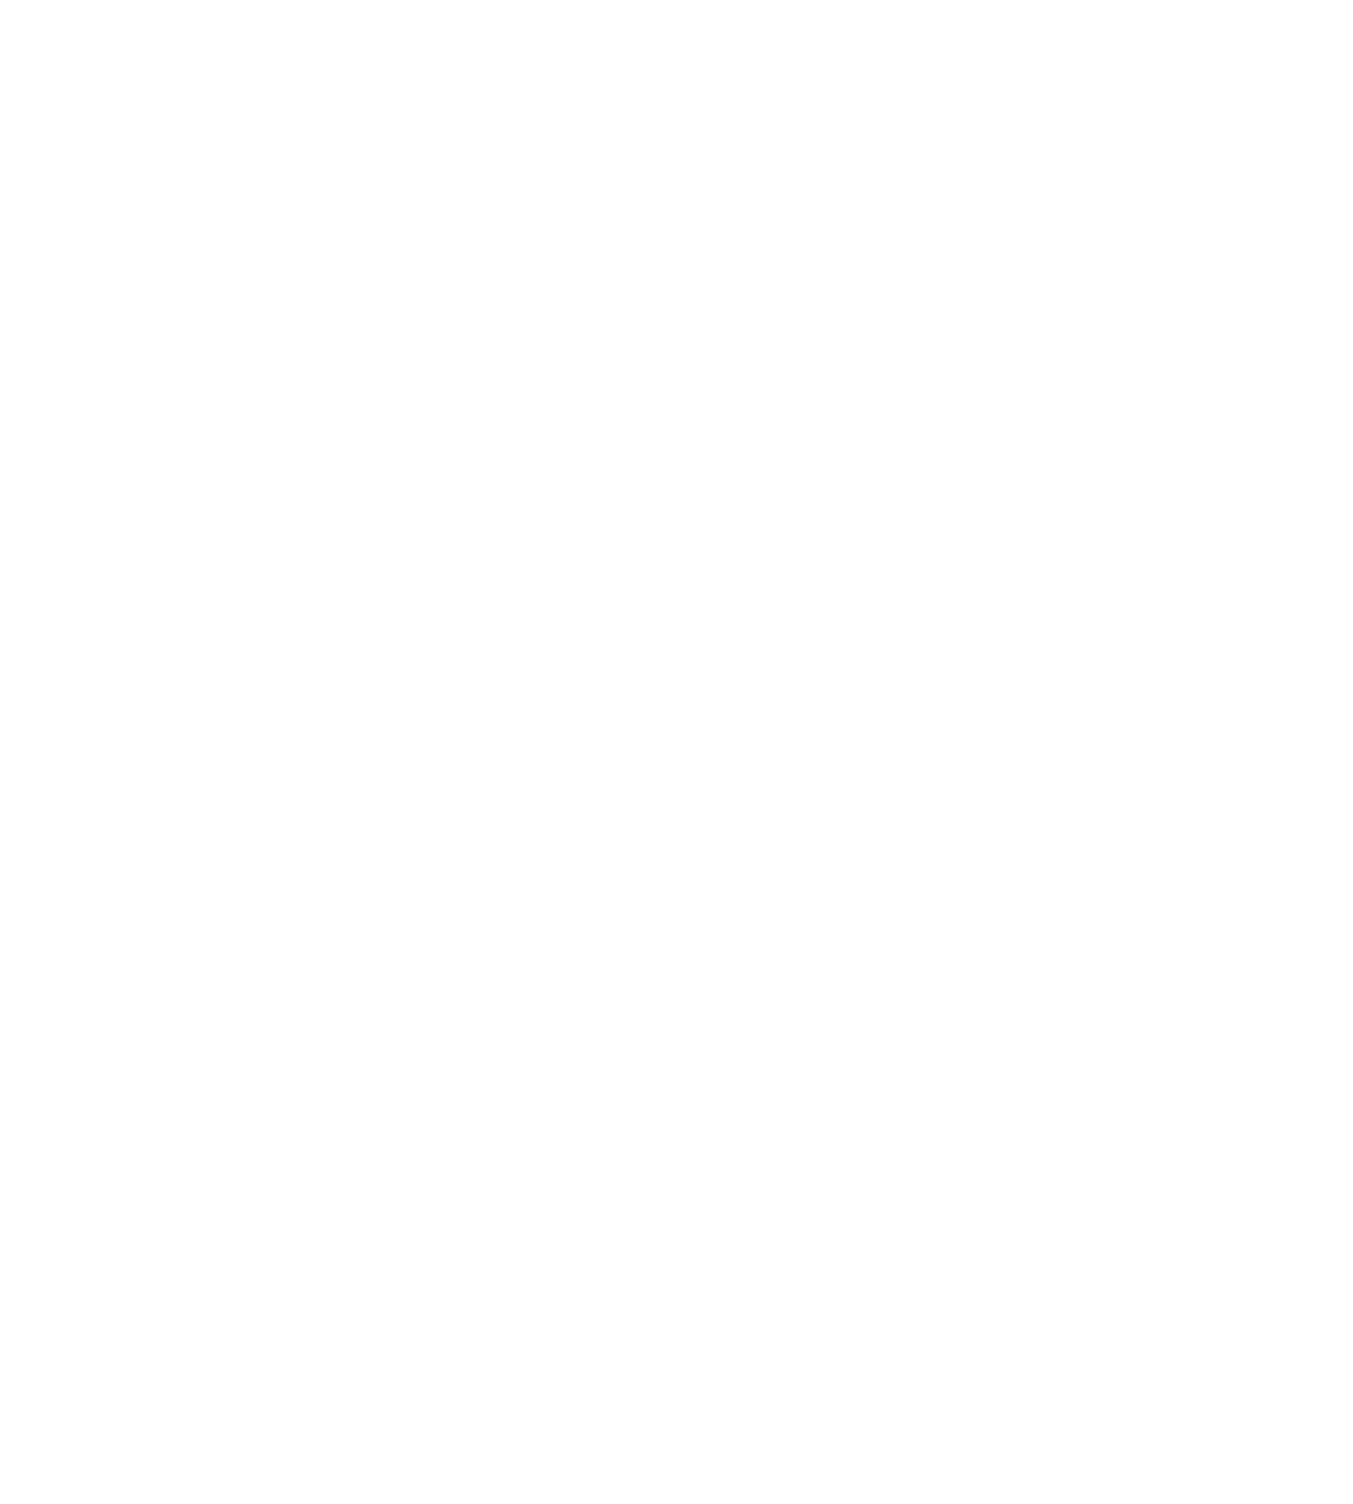 Nyxoah logo pour fonds sombres (PNG transparent)